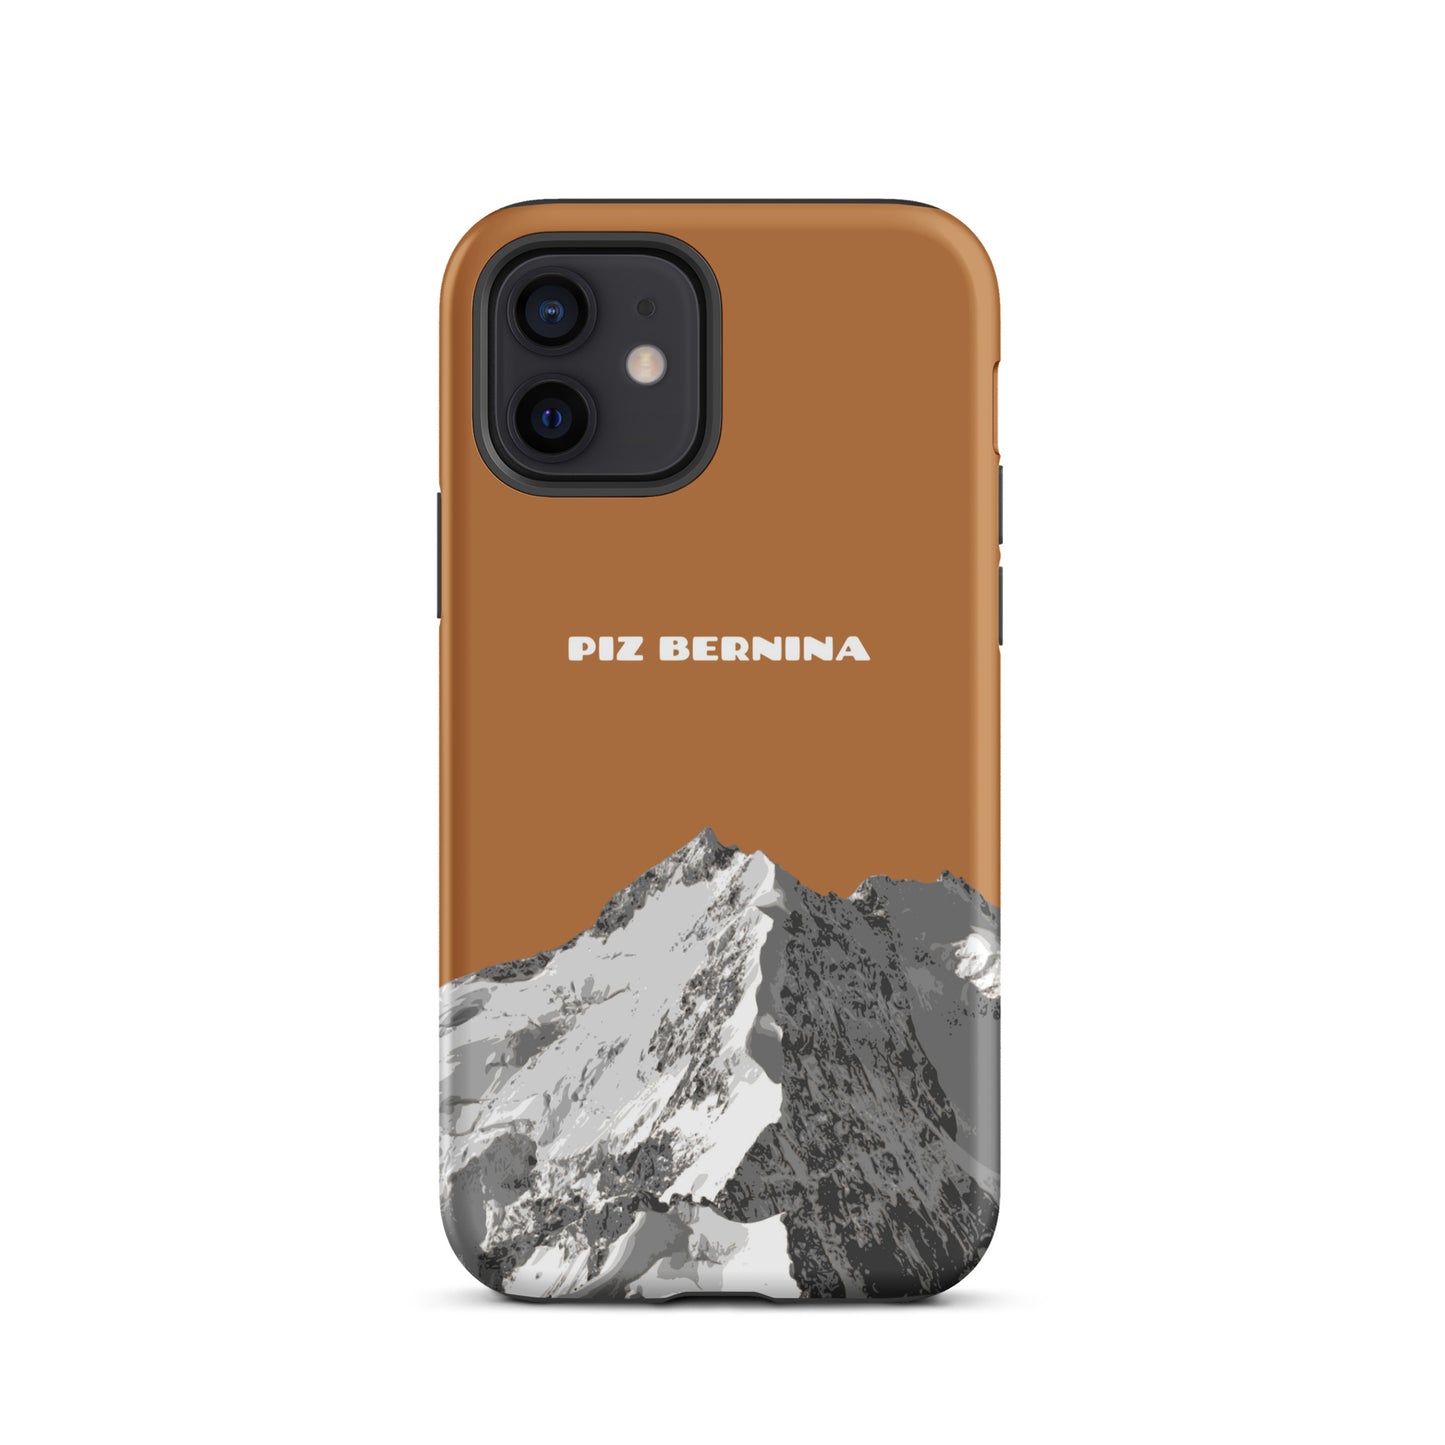 Hülle für das iPhone 12 von Apple in der Farbe Kupfer, dass den Piz Bernina in Graubünden zeigt.